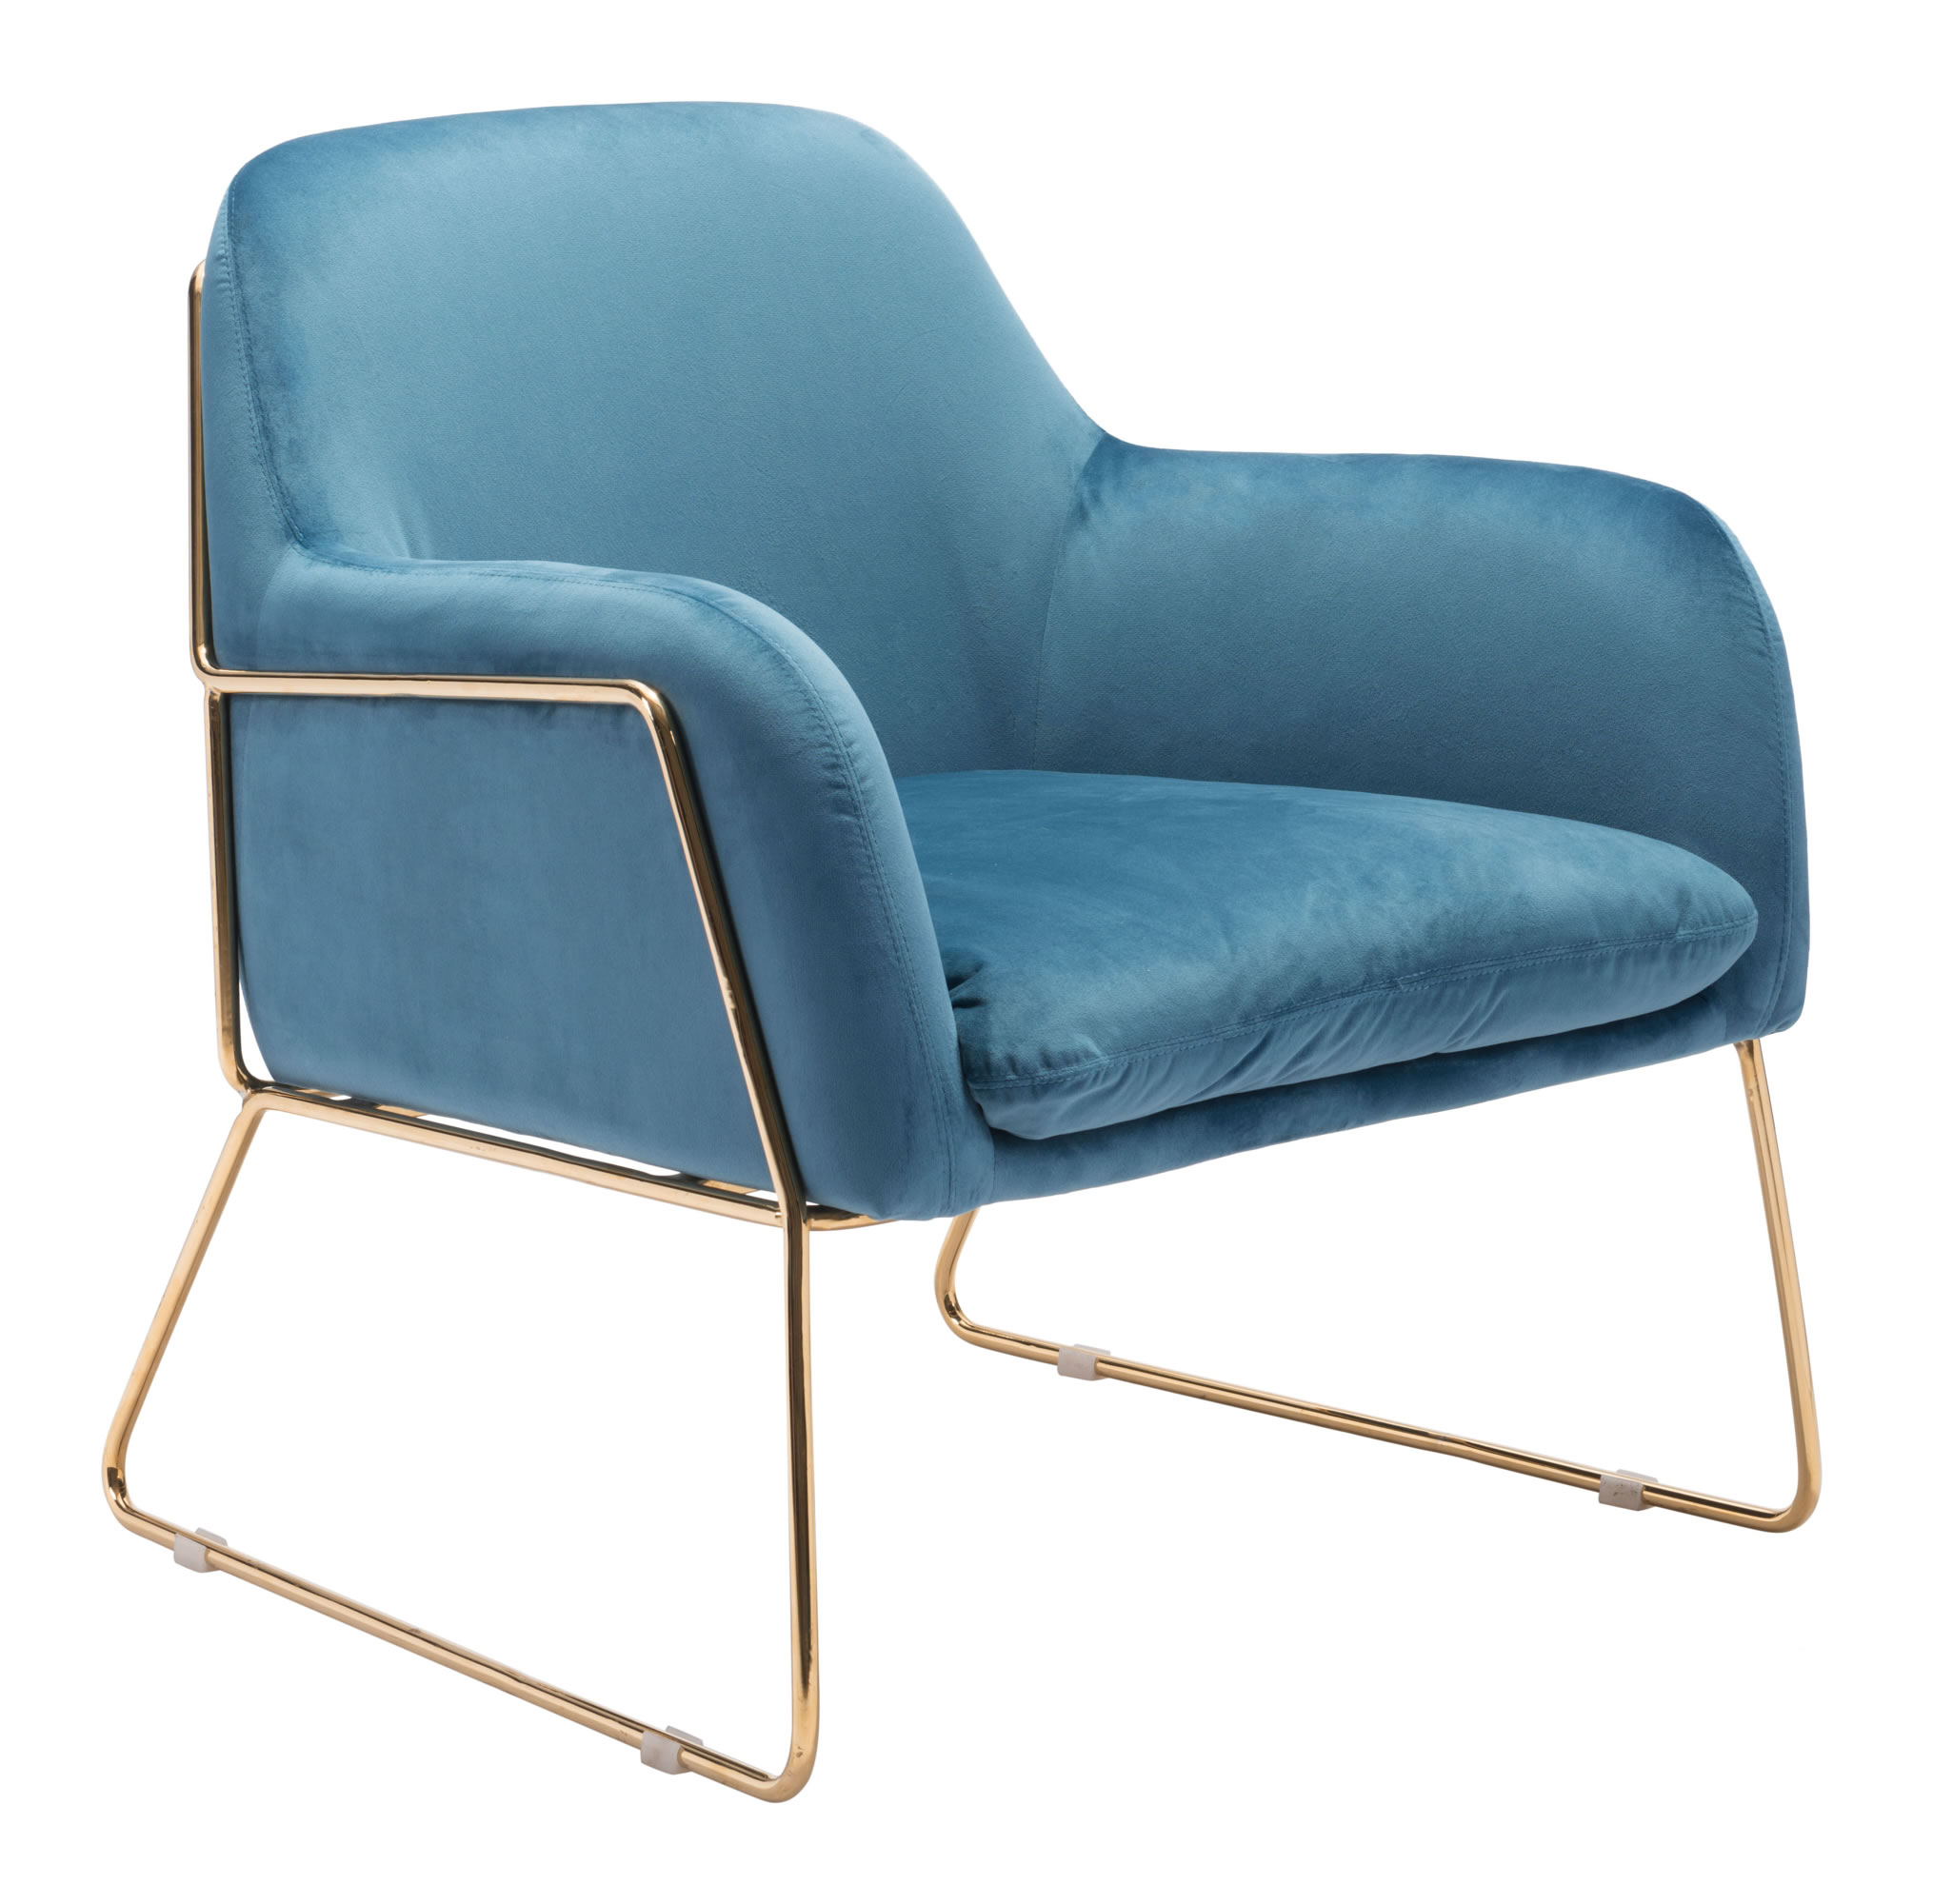 29.9" x 30.3" x 31.7" Blue Velvet Chromed Steel Arm Chair